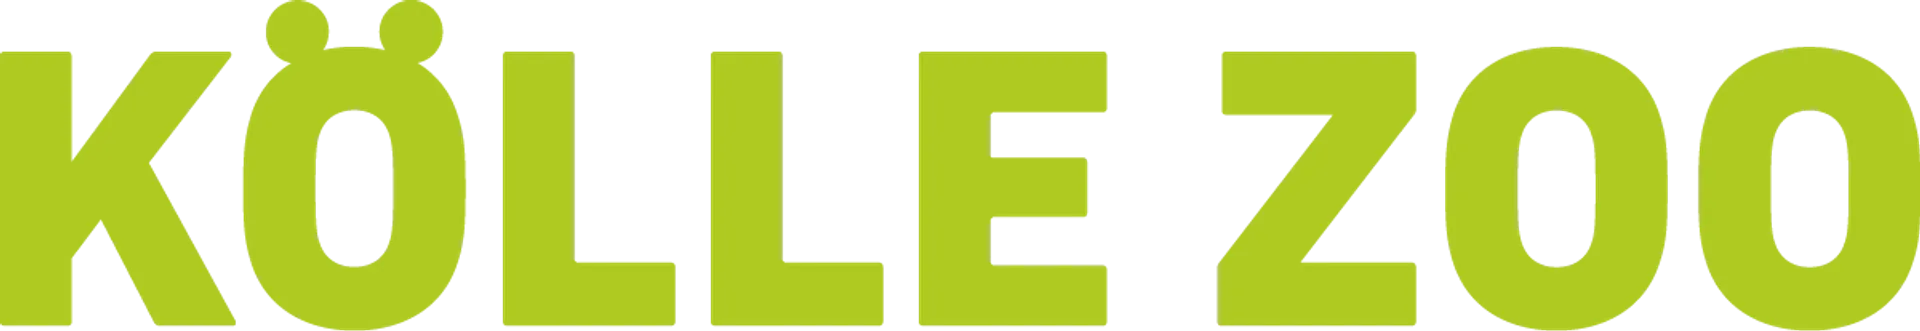 KÖLLE ZOO logo